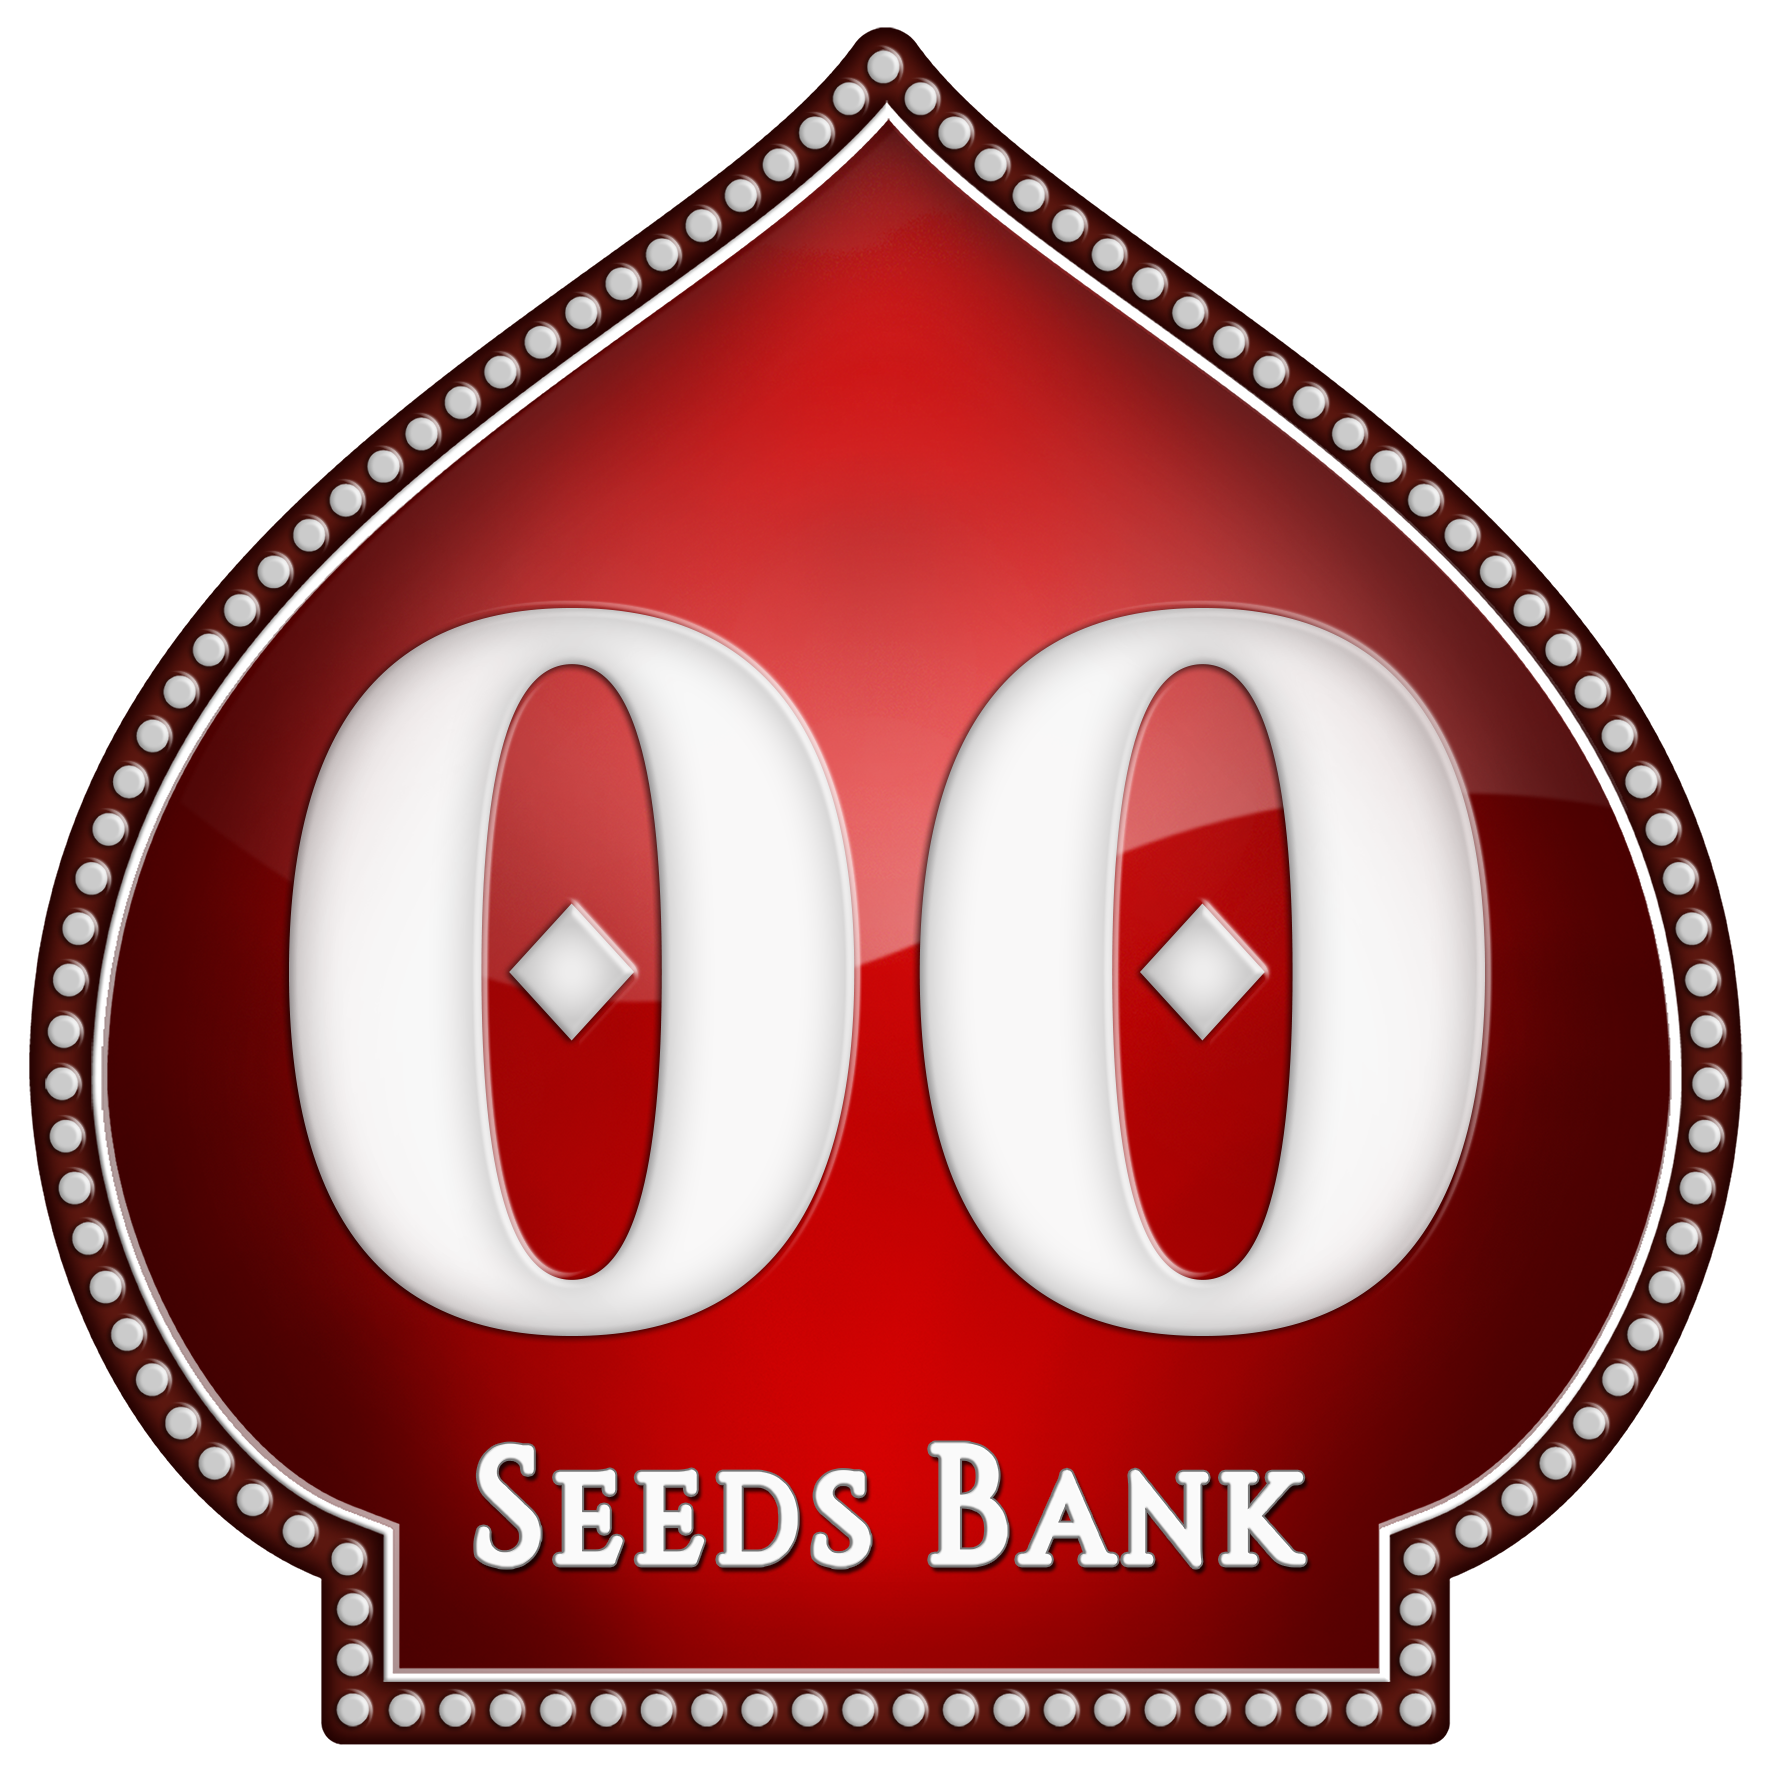 00 seed